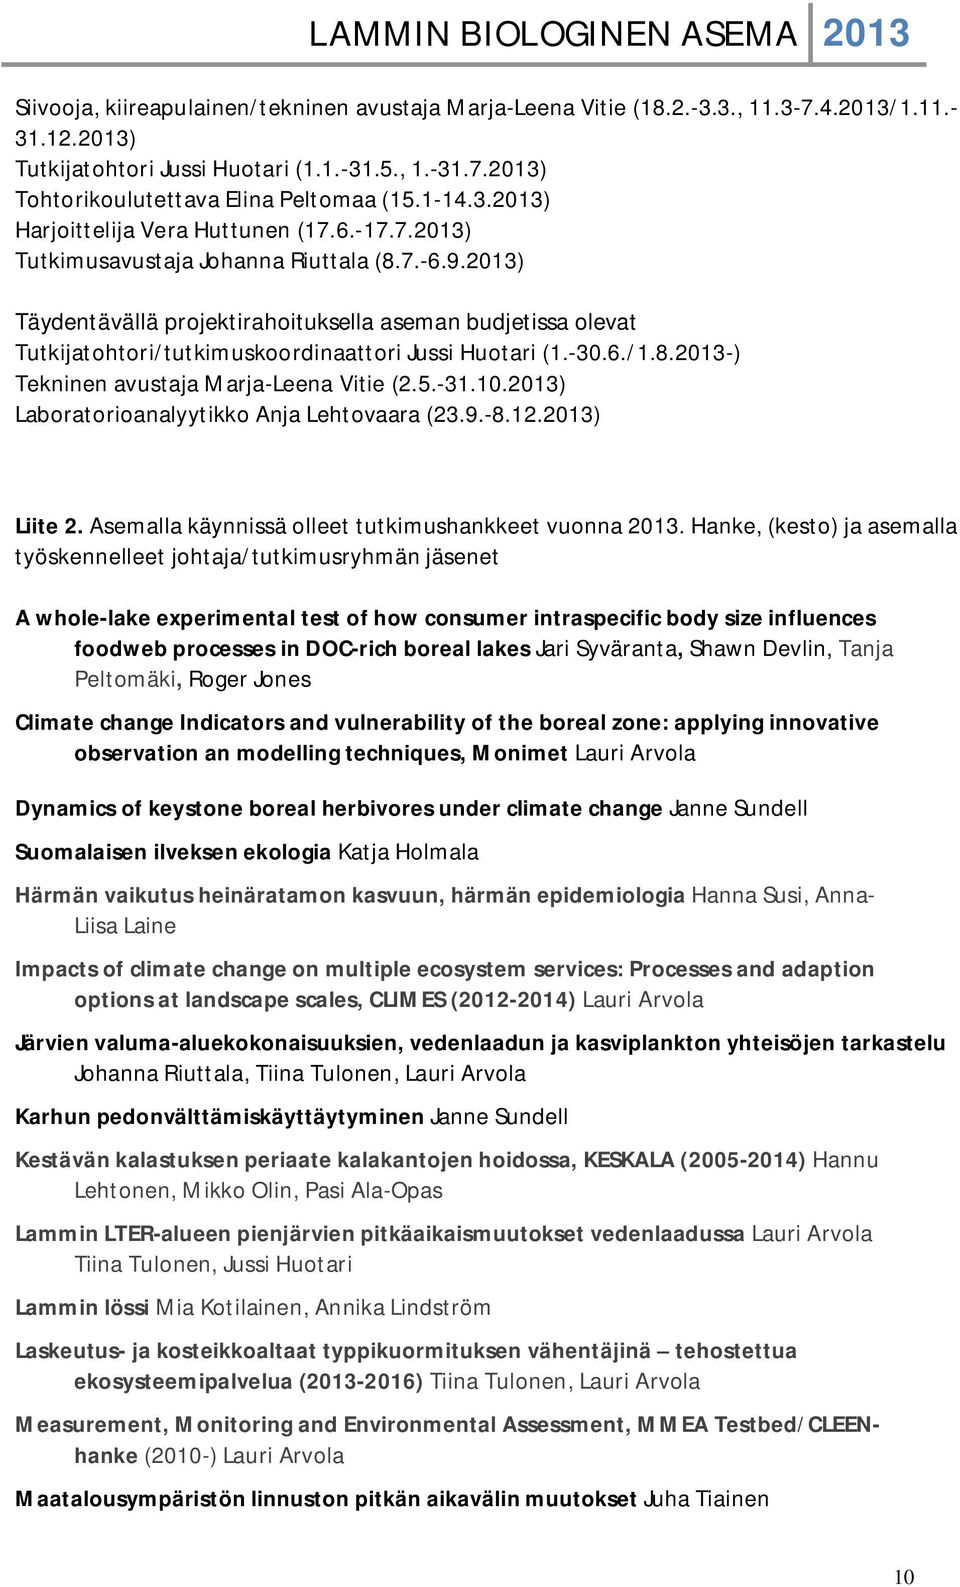 2013) Täydentävällä projektirahoituksella aseman budjetissa olevat Tutkijatohtori/tutkimuskoordinaattori Jussi Huotari (1.-30.6./1.8.2013-) Tekninen avustaja Marja-Leena Vitie (2.5.-31.10.